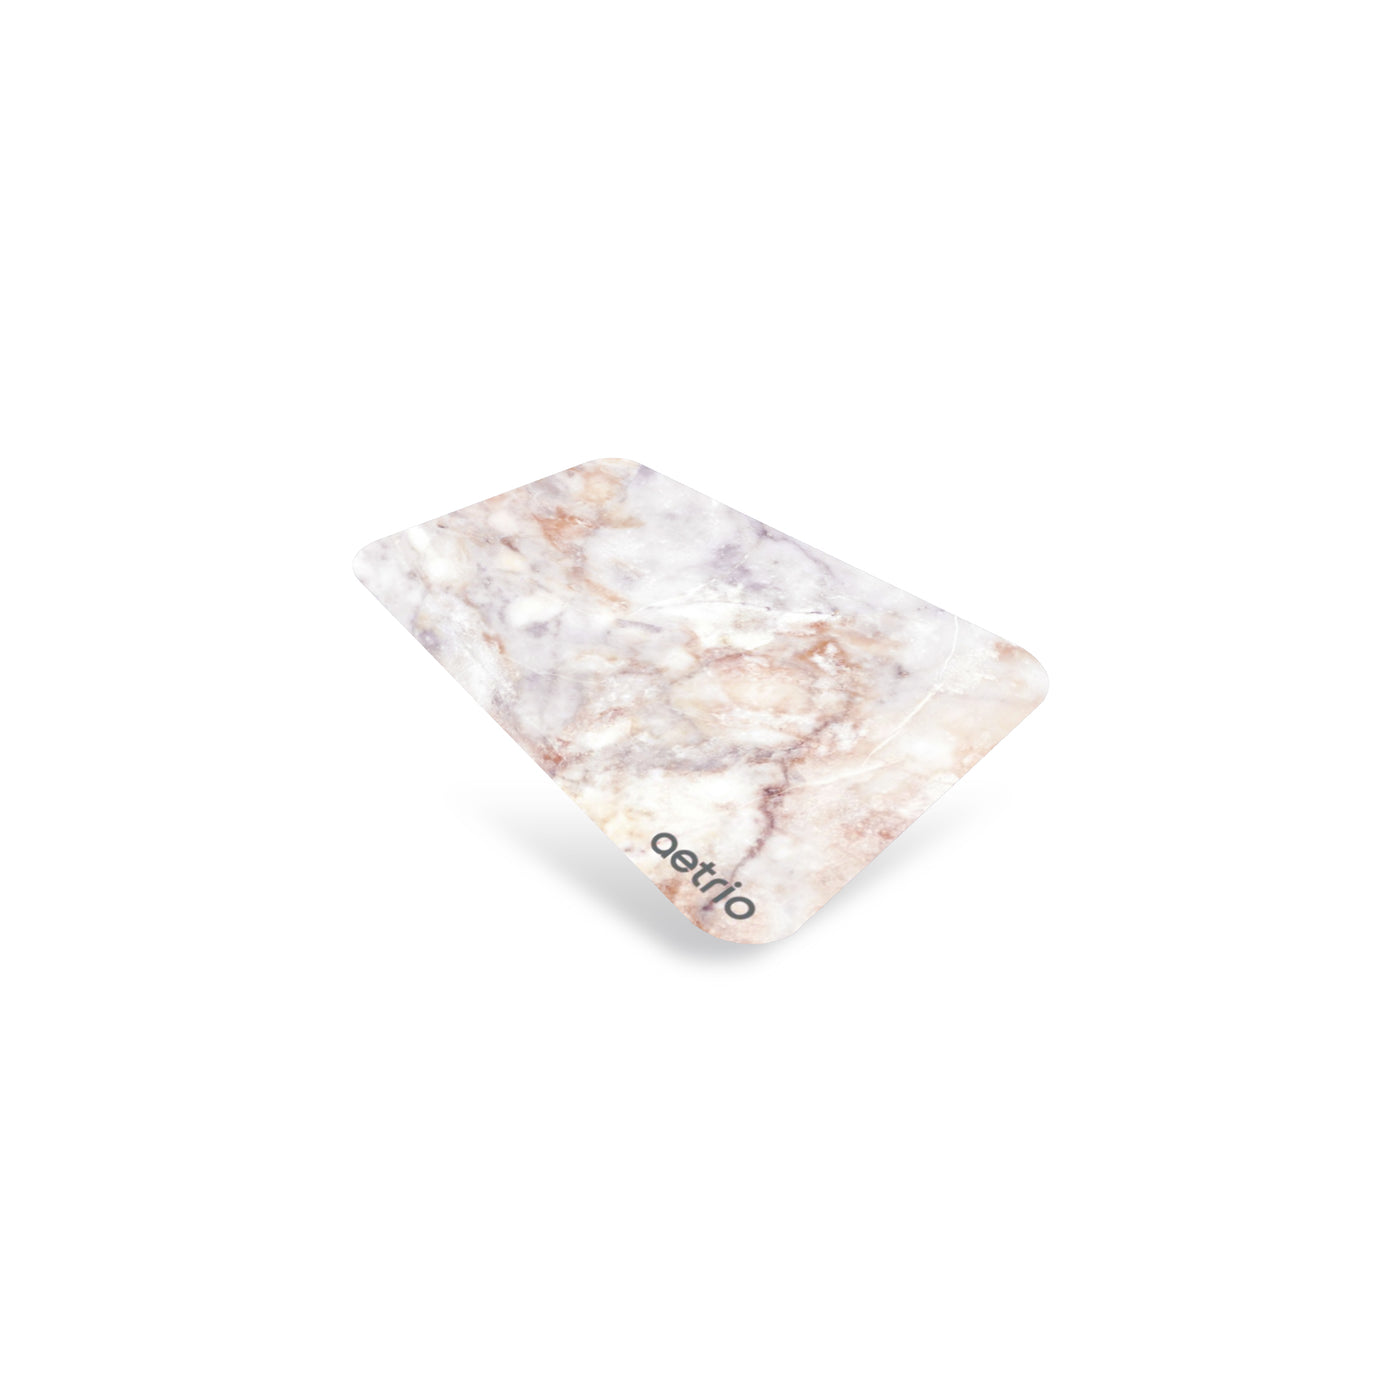 Diatomite Absorbent Mat Pink Marble | Bath Mat